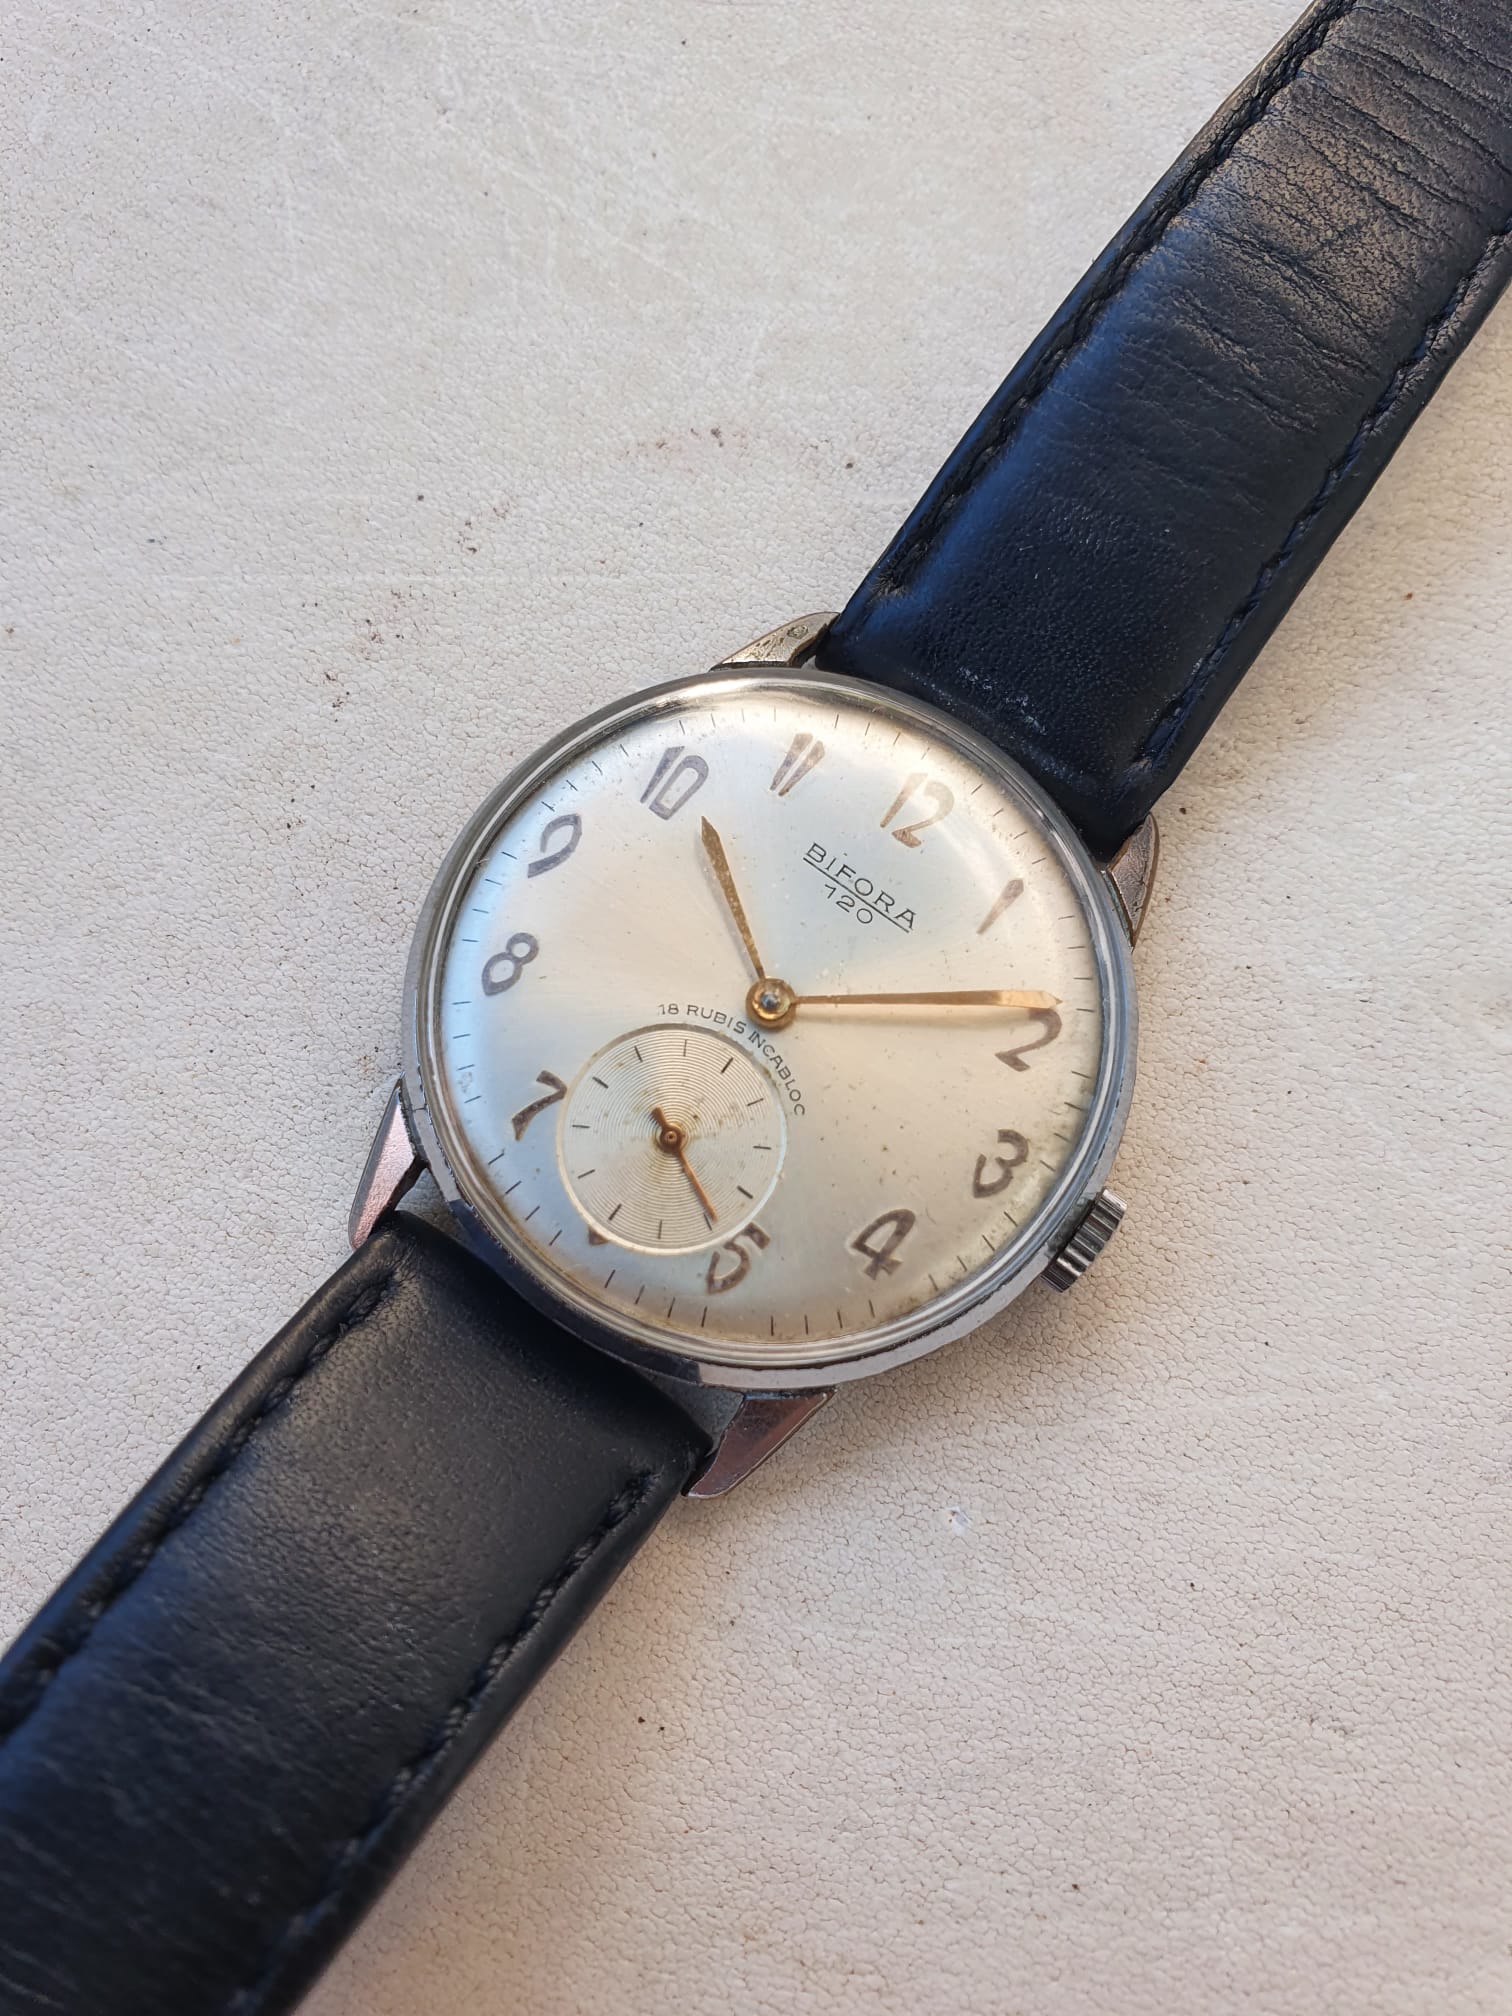 Vintage DUGENA Festa 692 Bifora Watch movement For parts (K419) | eBay